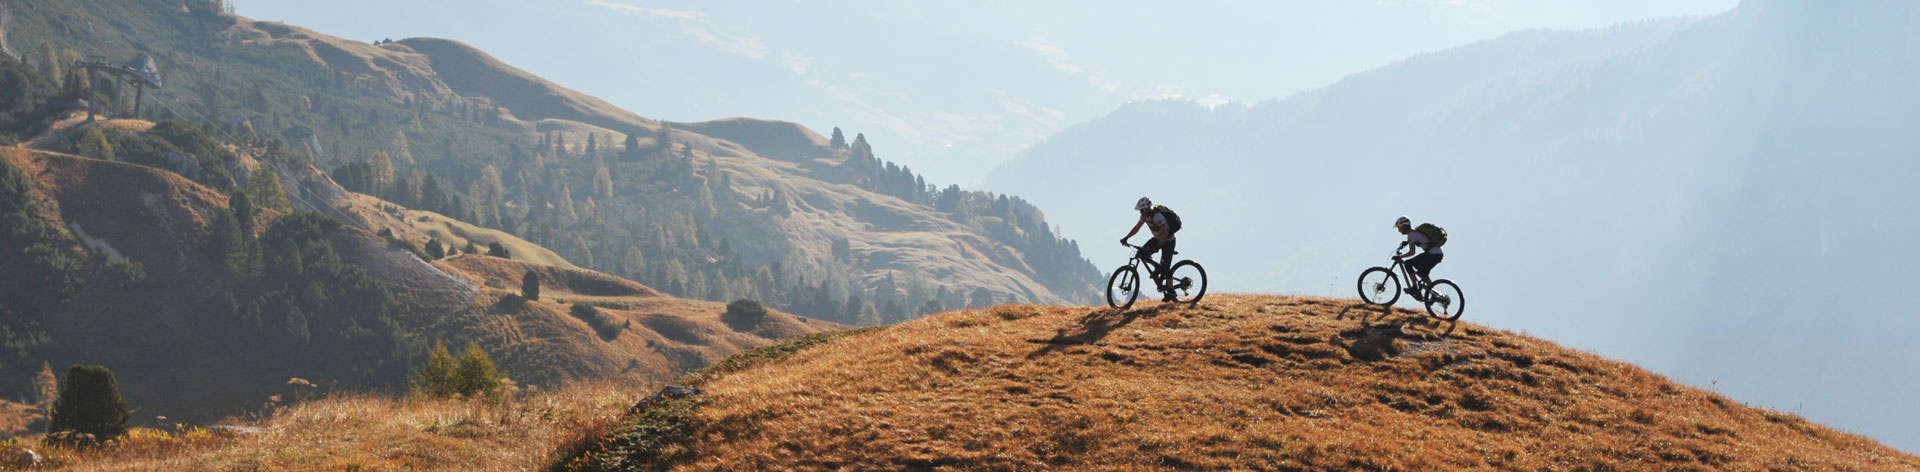 Dainese Hg Harashimaya Chaqueta Impermeable MTB, Downhill, Enduro,  All-mountain, Bicicleta de Montaña, Ciclismo Hombre